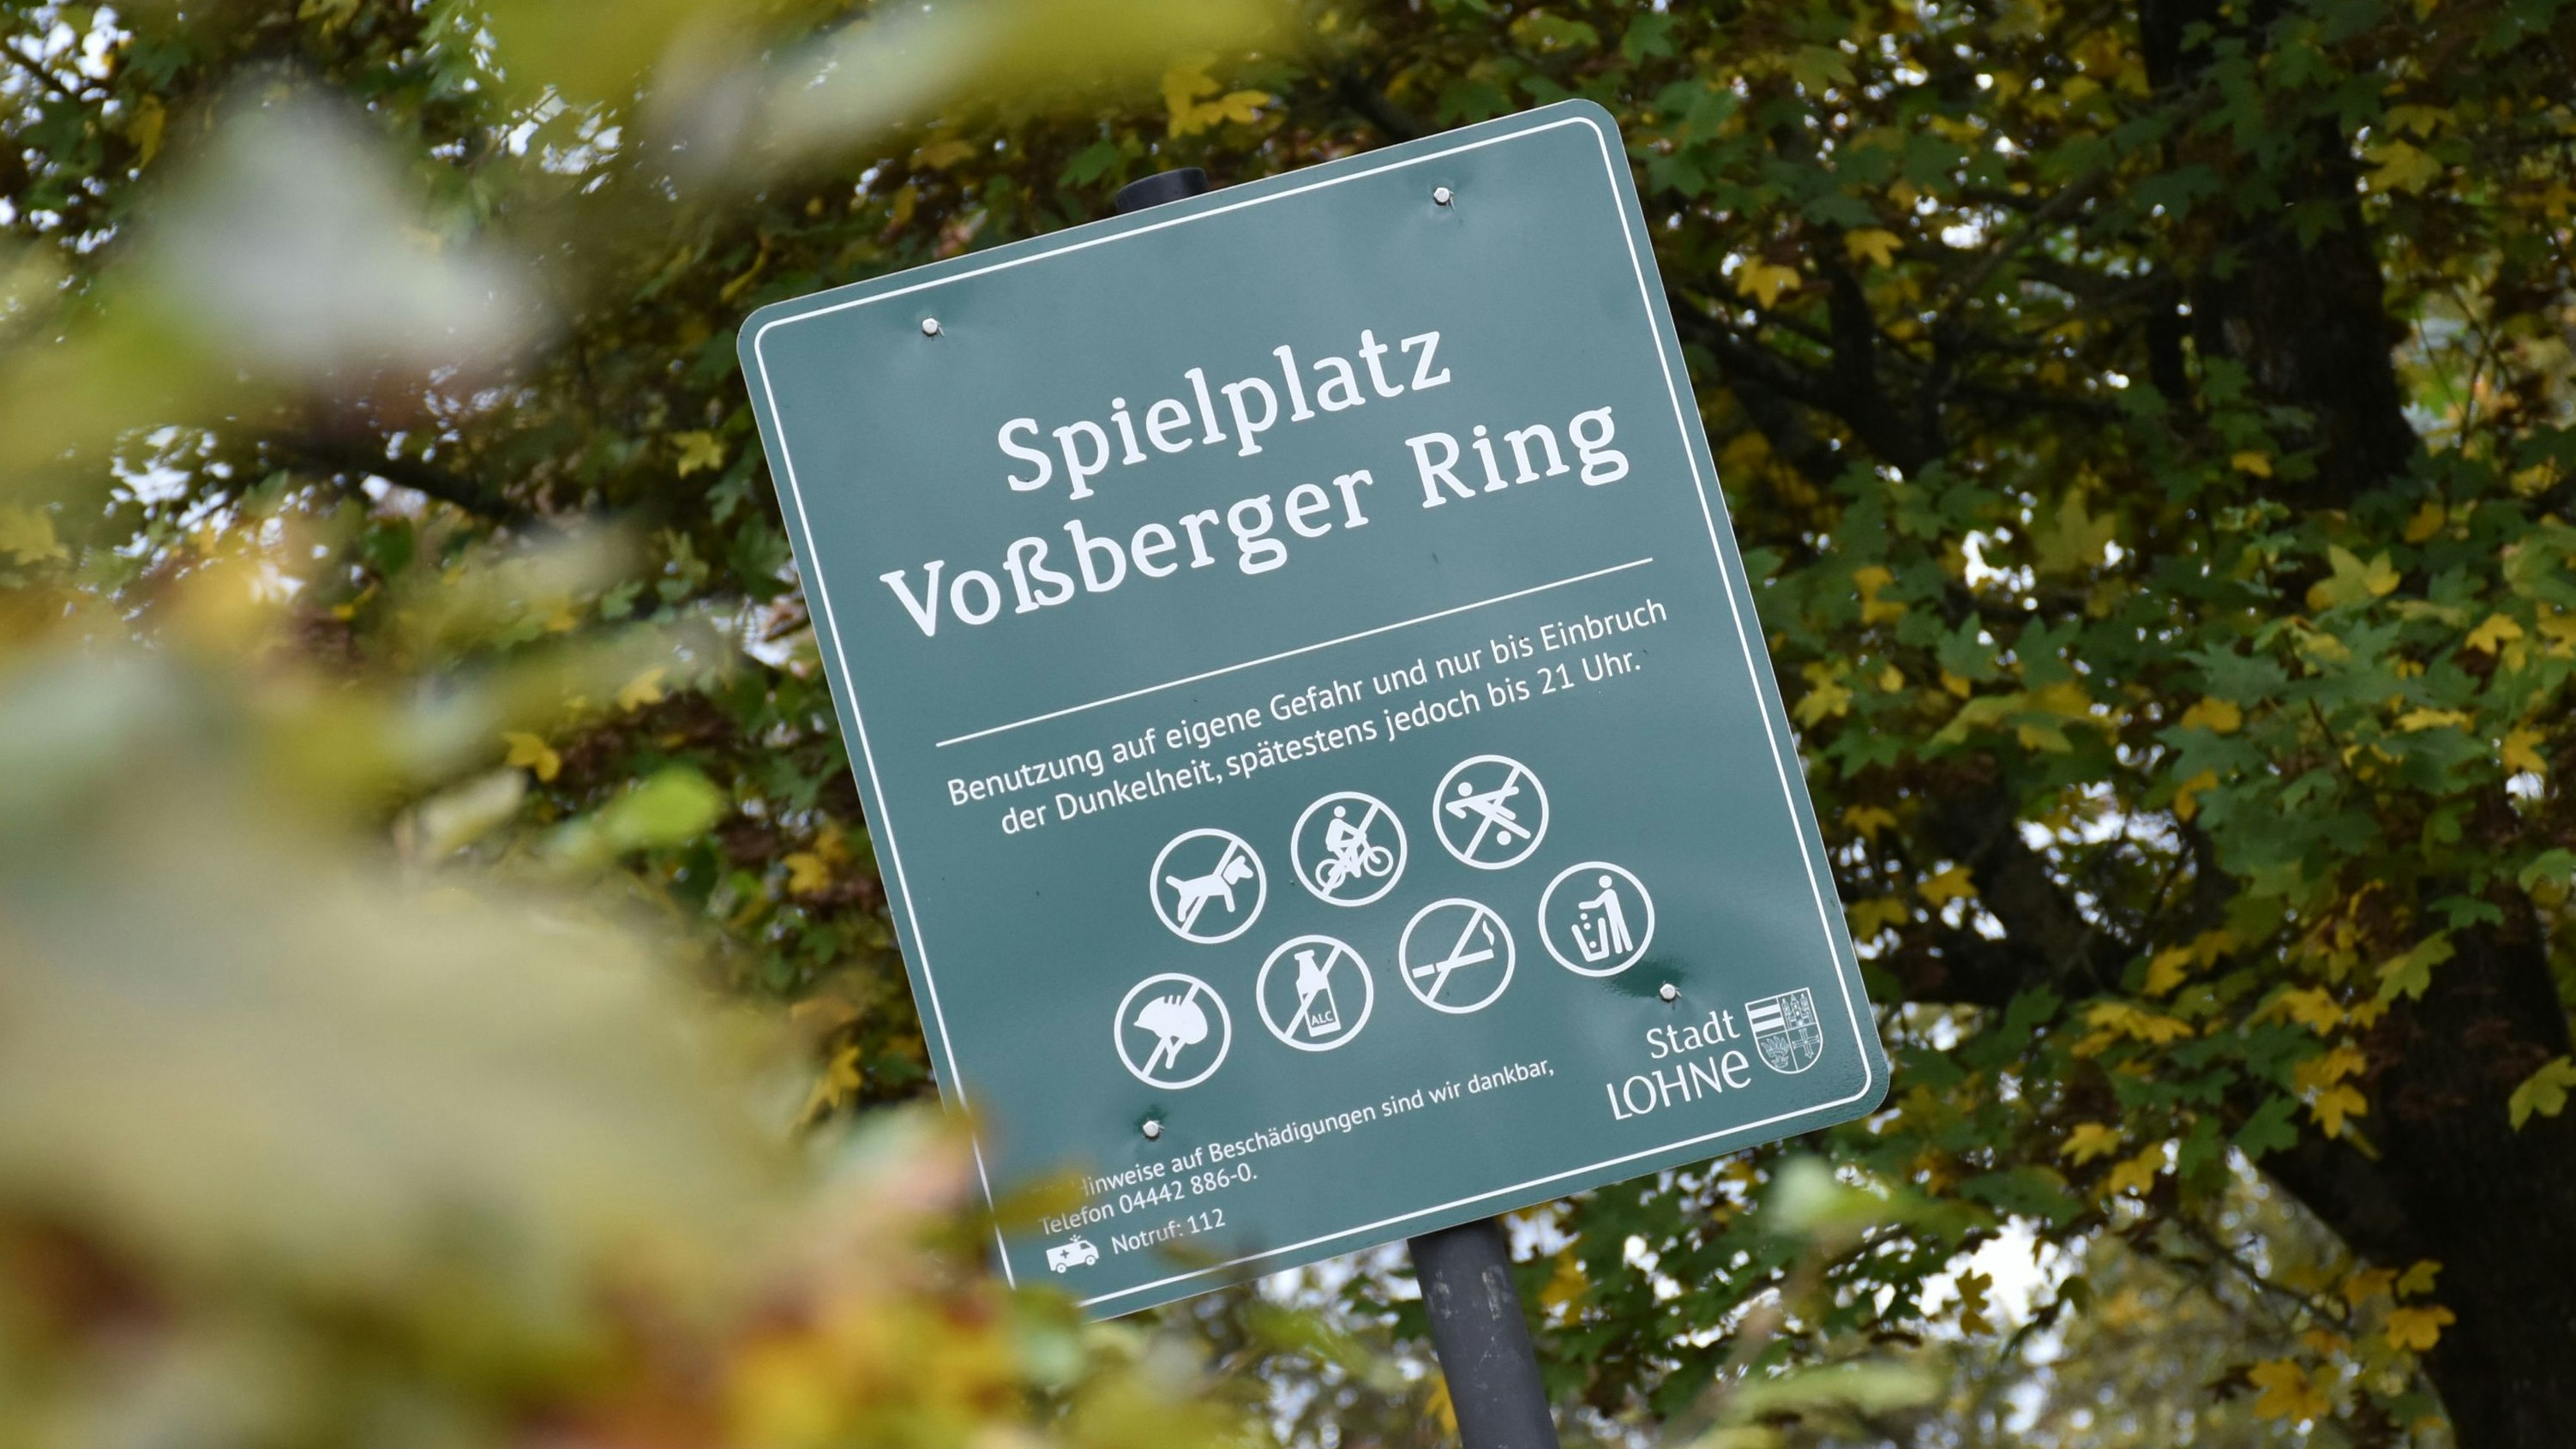 Der Spielplatz Voßberger Ring – ein Kriminalitäts-Hotspot? Anwohner ärgern sich über die Vorgänge auf dem Areal. Stadt und Polizei bestätigen etwaige Missstände jedoch nicht. Foto: Timphaus